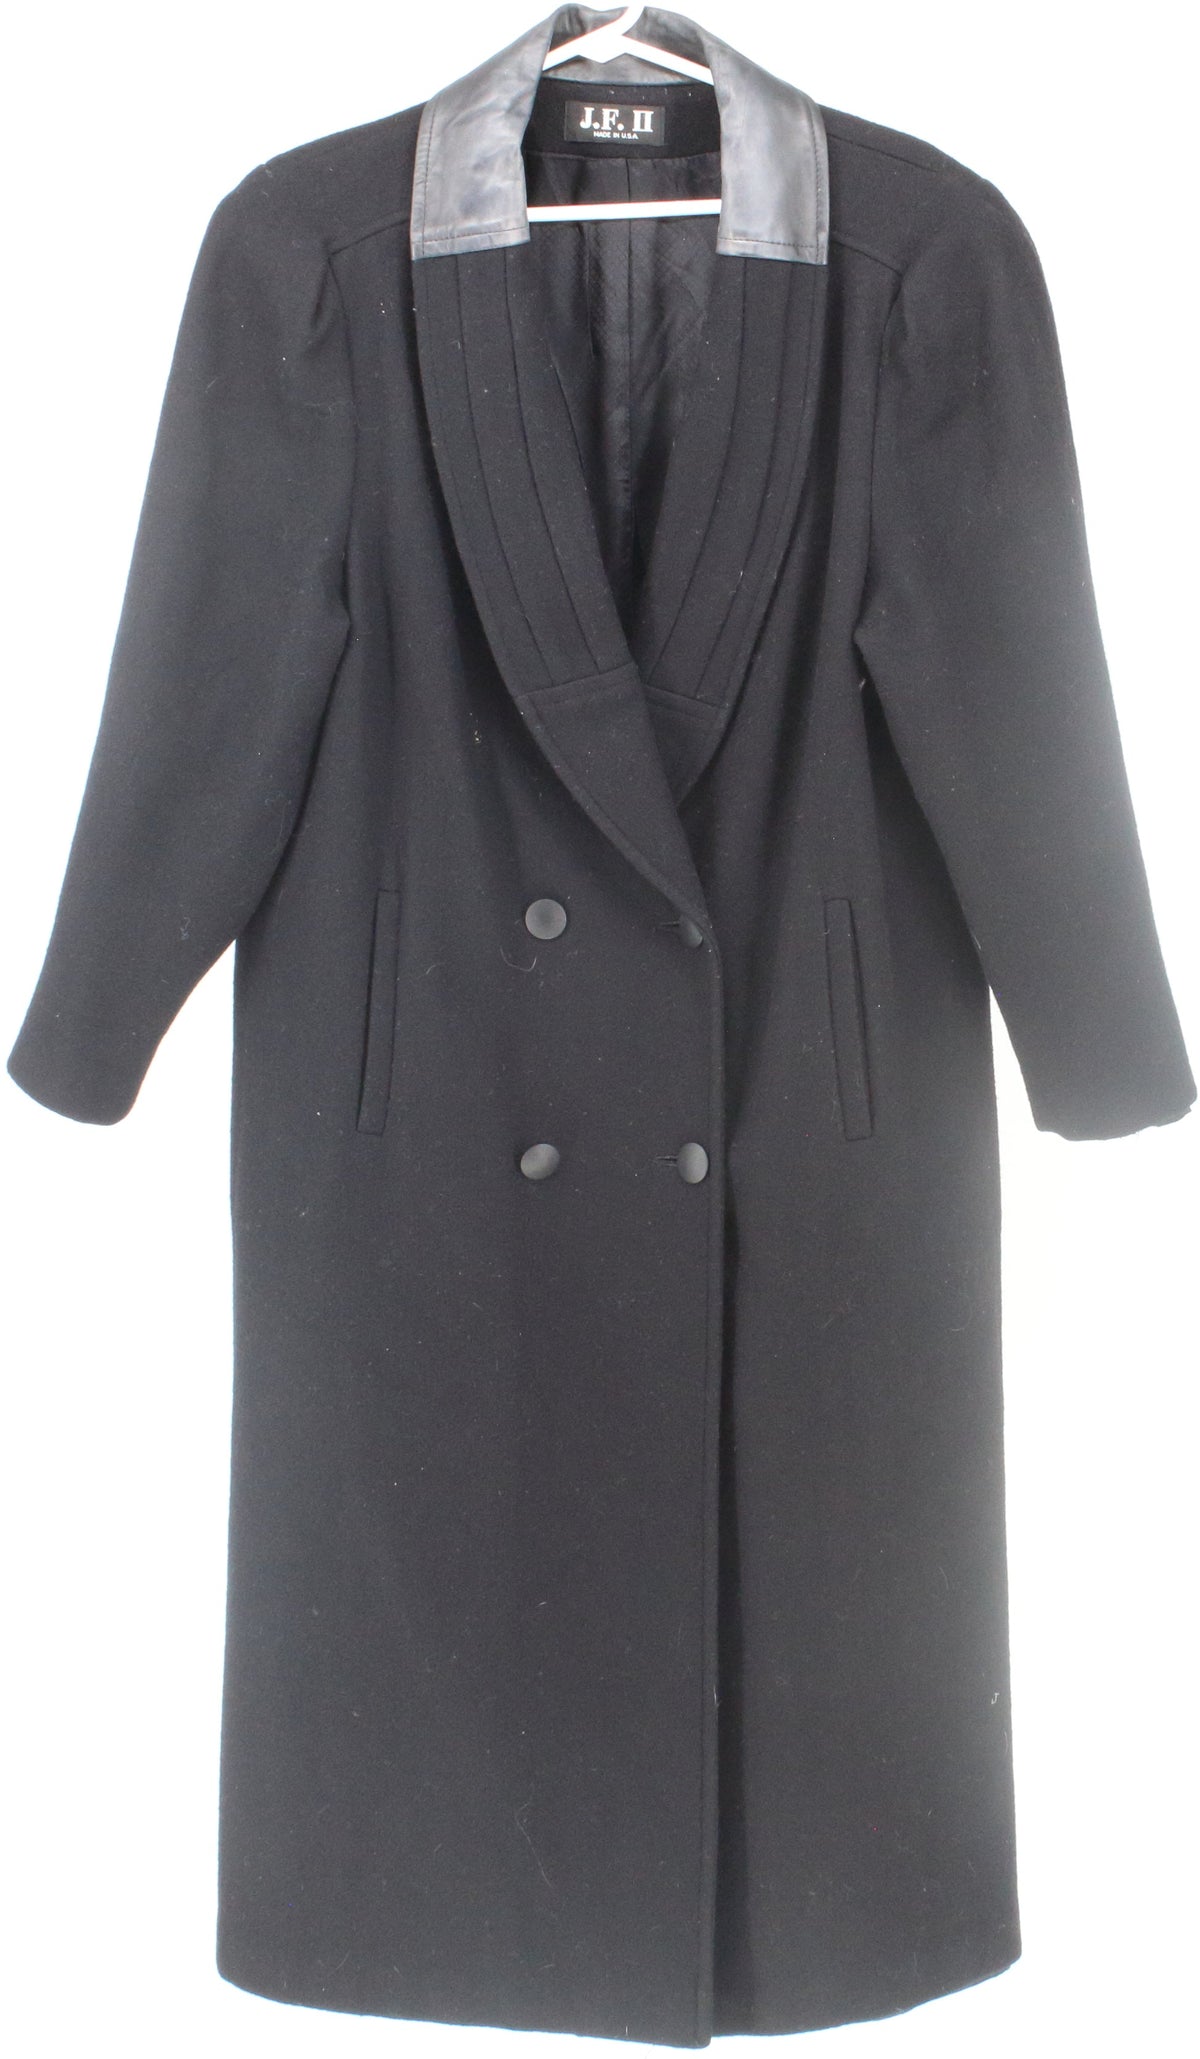 J.F. II Black Long Women's Coat